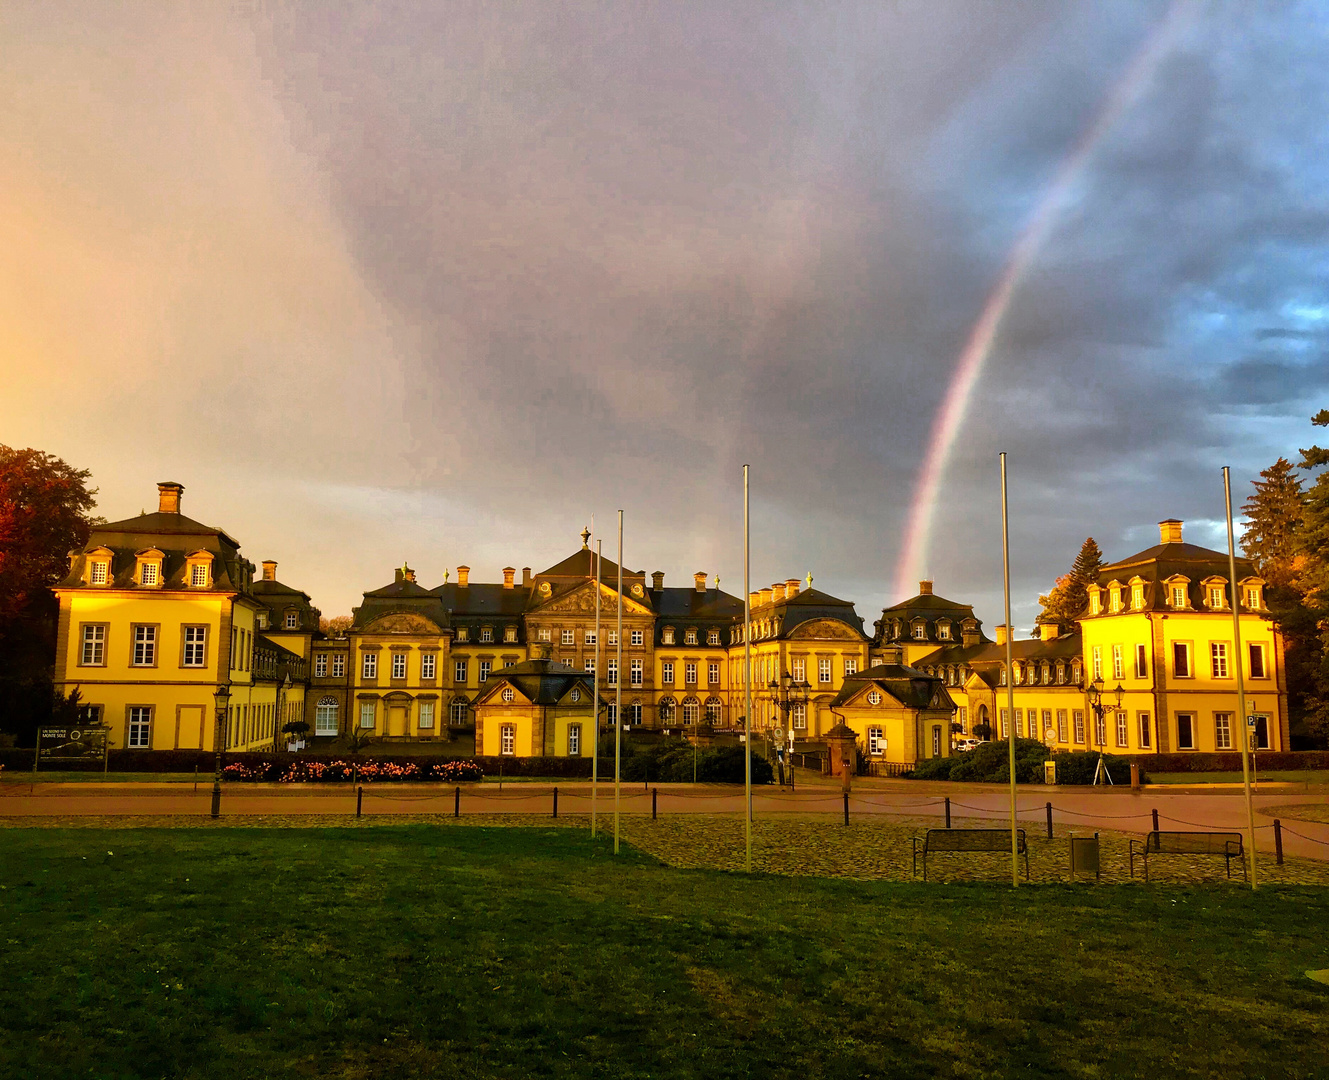 Barockschloss mit Regenbogen in Bad Arolsen